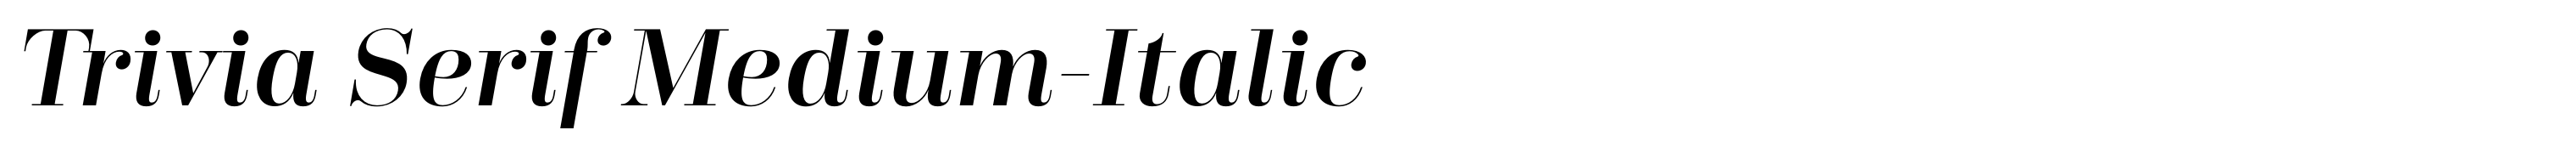 Trivia Serif Medium-Italic